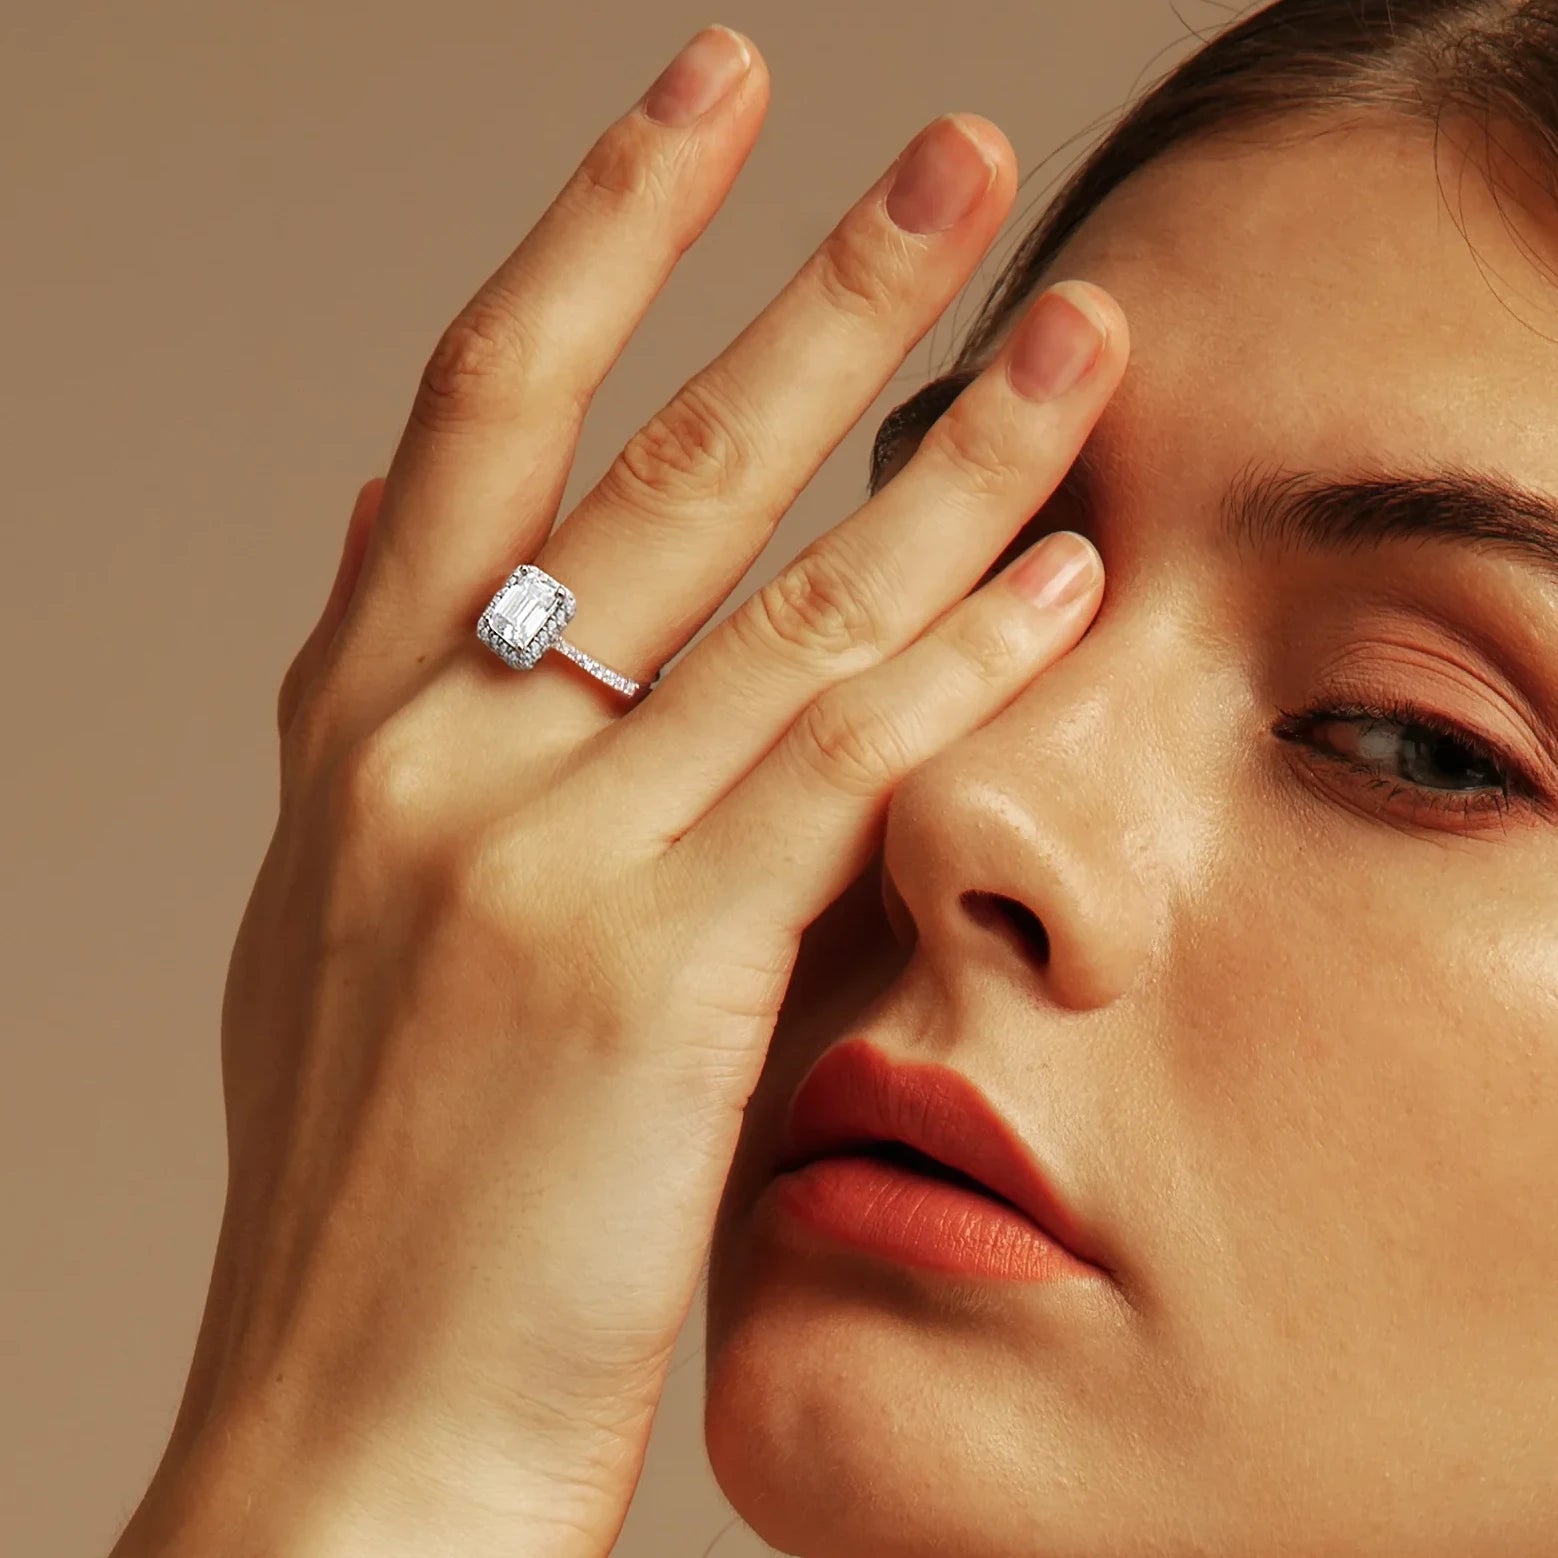 Emerald Cut Moissanite Diamond Engagement Ring for Women Rings 